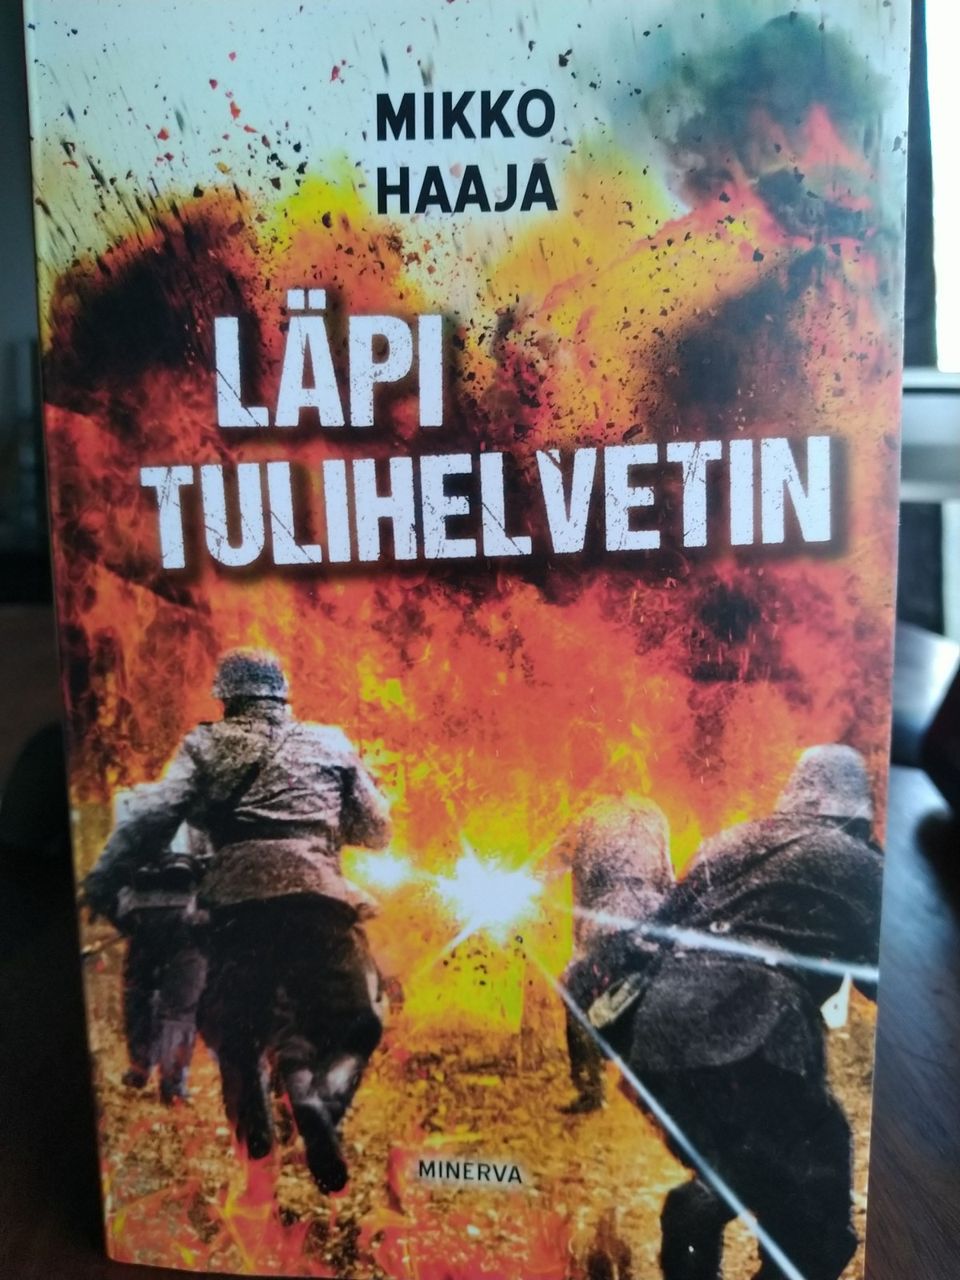 Läpi tulihelvetin - Mikko Haaja